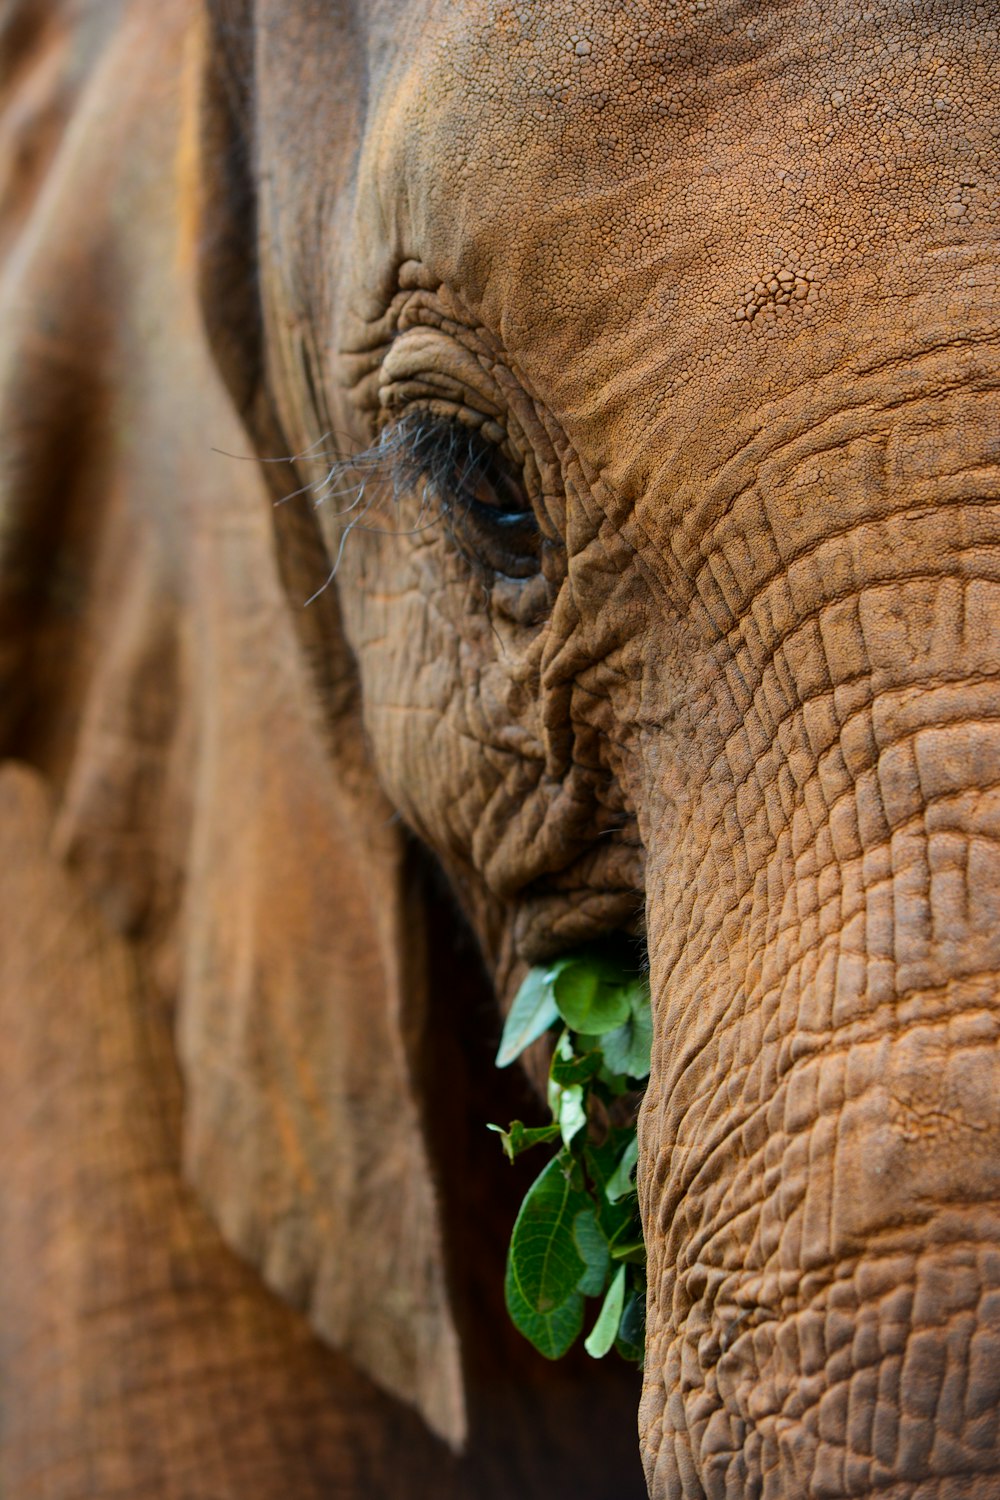 um close up de um elefante com uma planta na boca